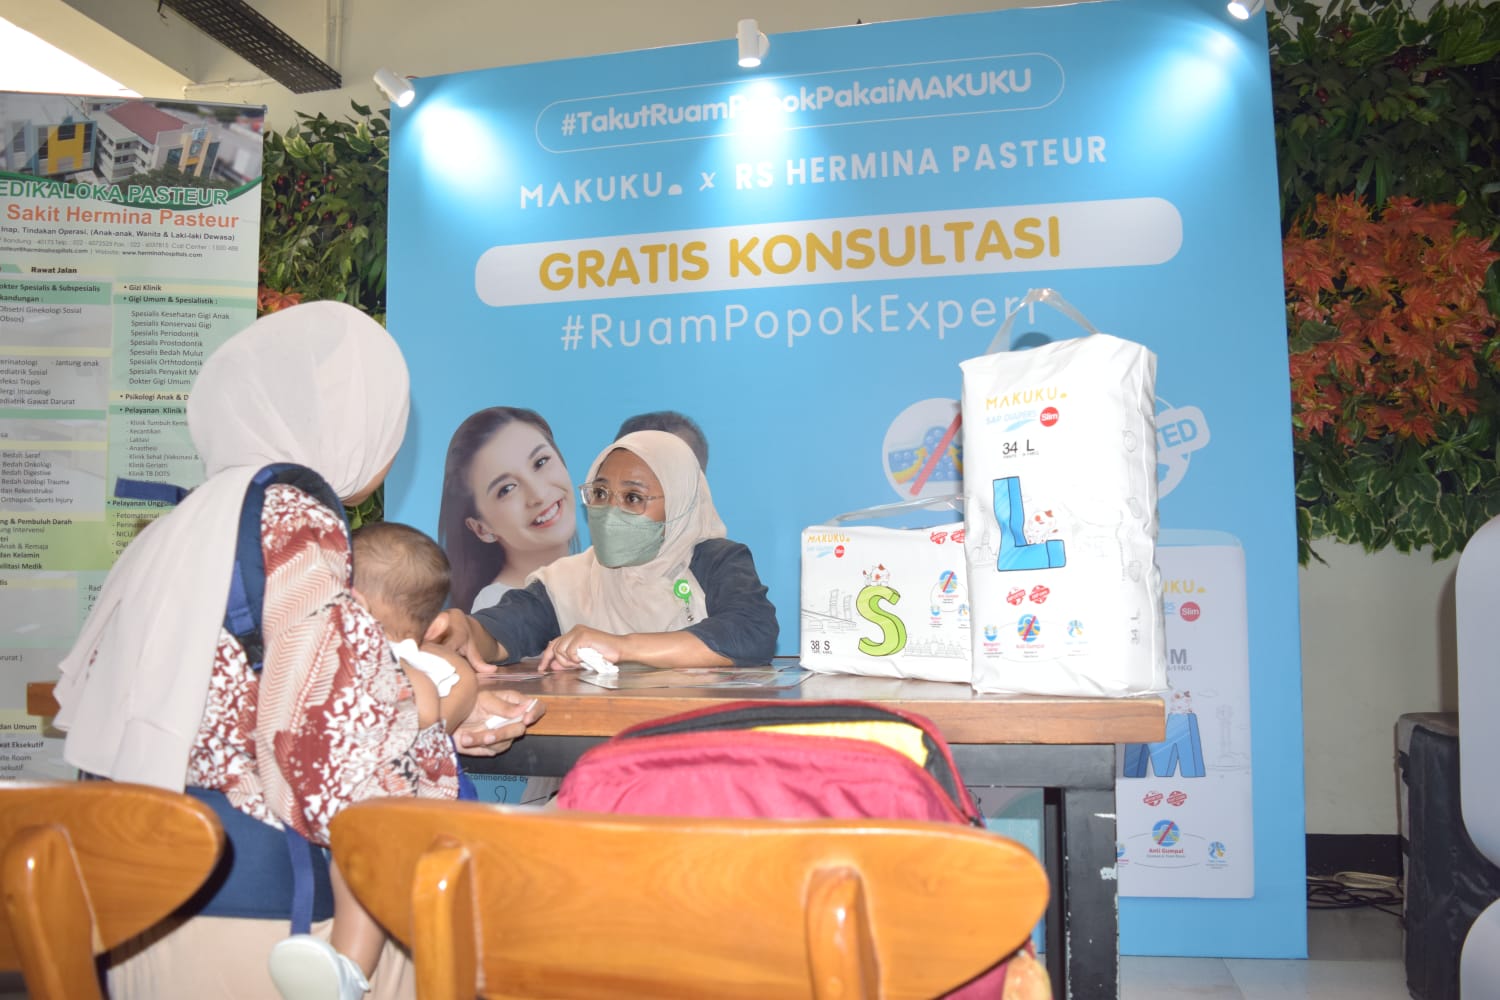 Bantu Atasi Masalah Ruam Popok Lewat Konsultasi Gratis, Makuku Berkolaborasi dengan RS Hermina Pasteur di Bandung